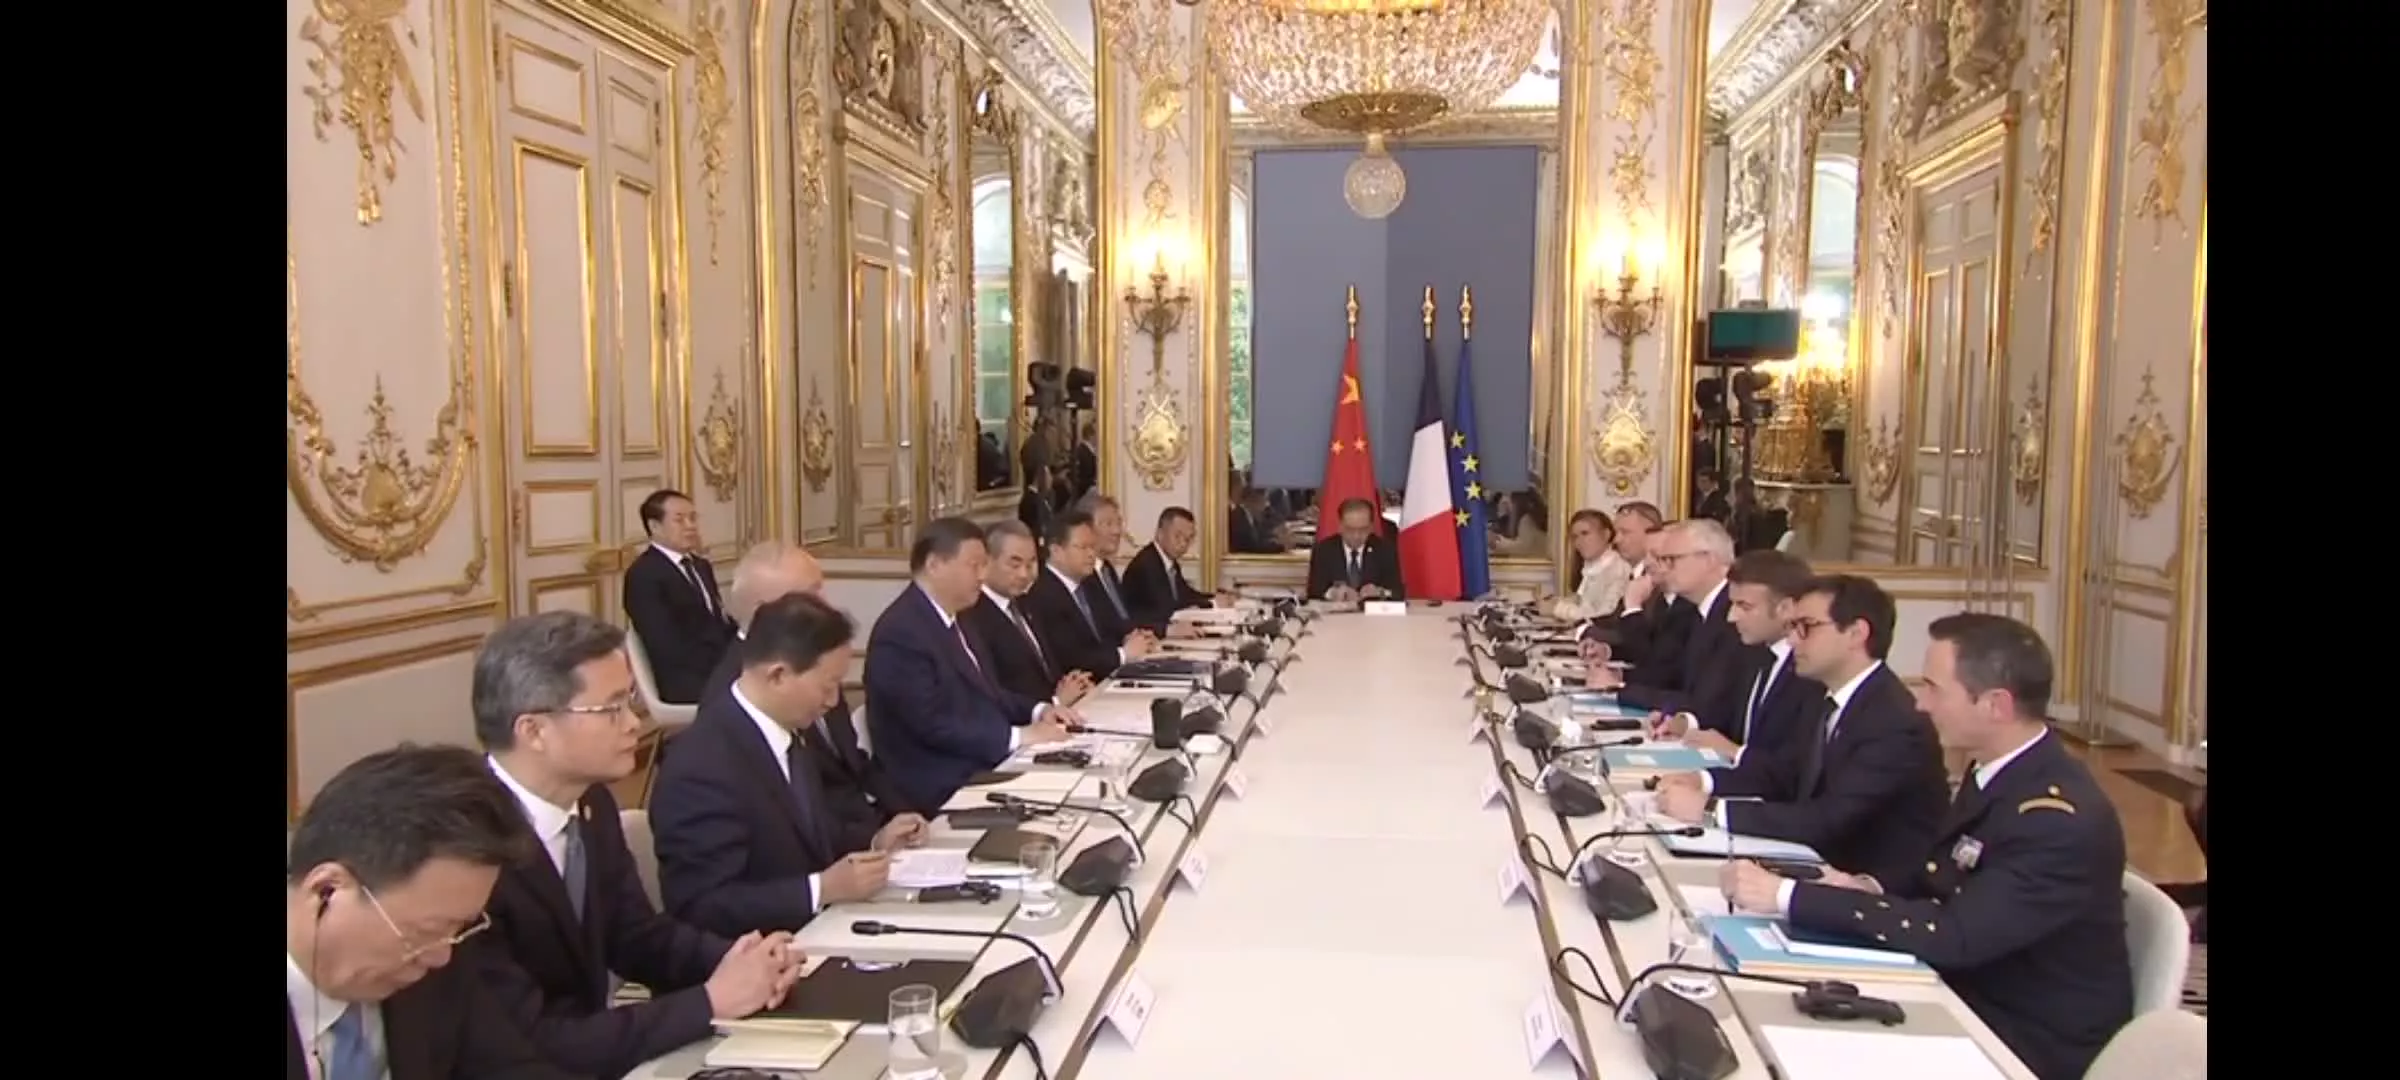 ملاقات روسای جمهوری چین و فرانسه در الیزه